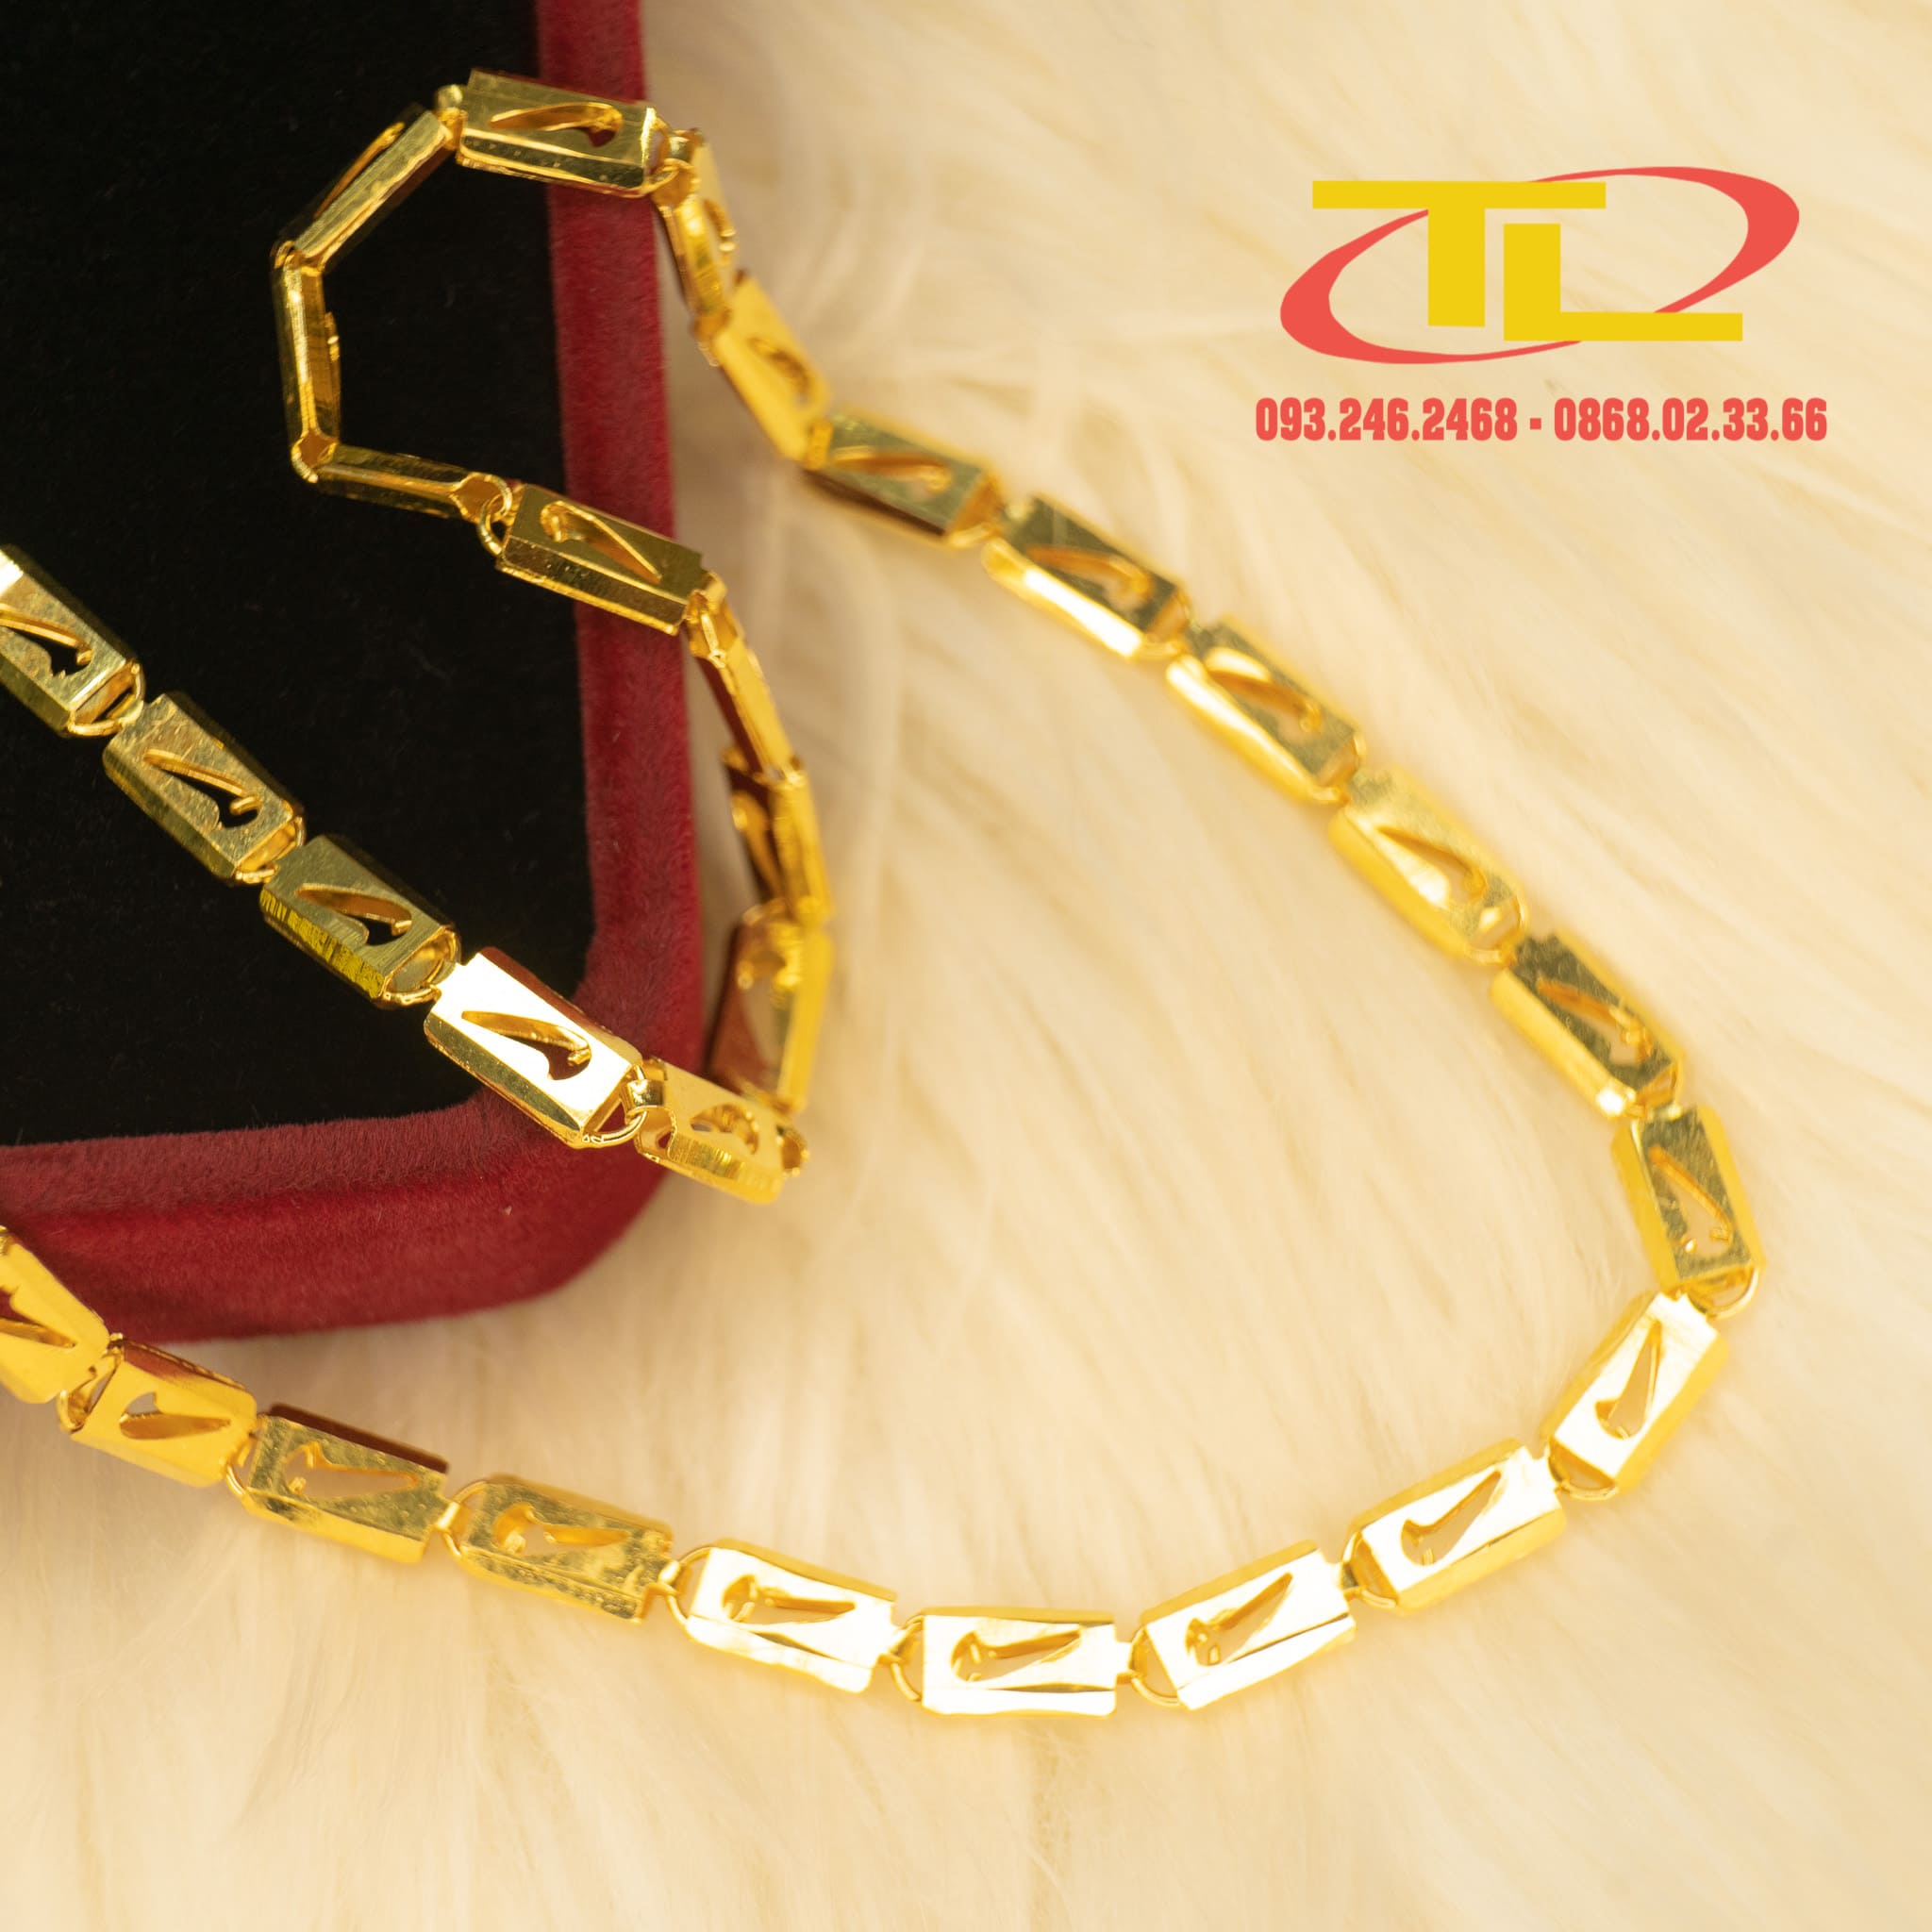 Dây chuyền vàng 10k mặt nam
Dây chuyền vàng 10k mặt nam là một trong những sản phẩm trang sức nam đẹp và ấn tượng nhất trên thị trường hiện nay. Với kiểu dáng sang trọng, tinh xảo và chất liệu vàng 10k đẹp, dây chuyền này sẽ đem lại sự tự tin và quyền lực cho các quý ông.